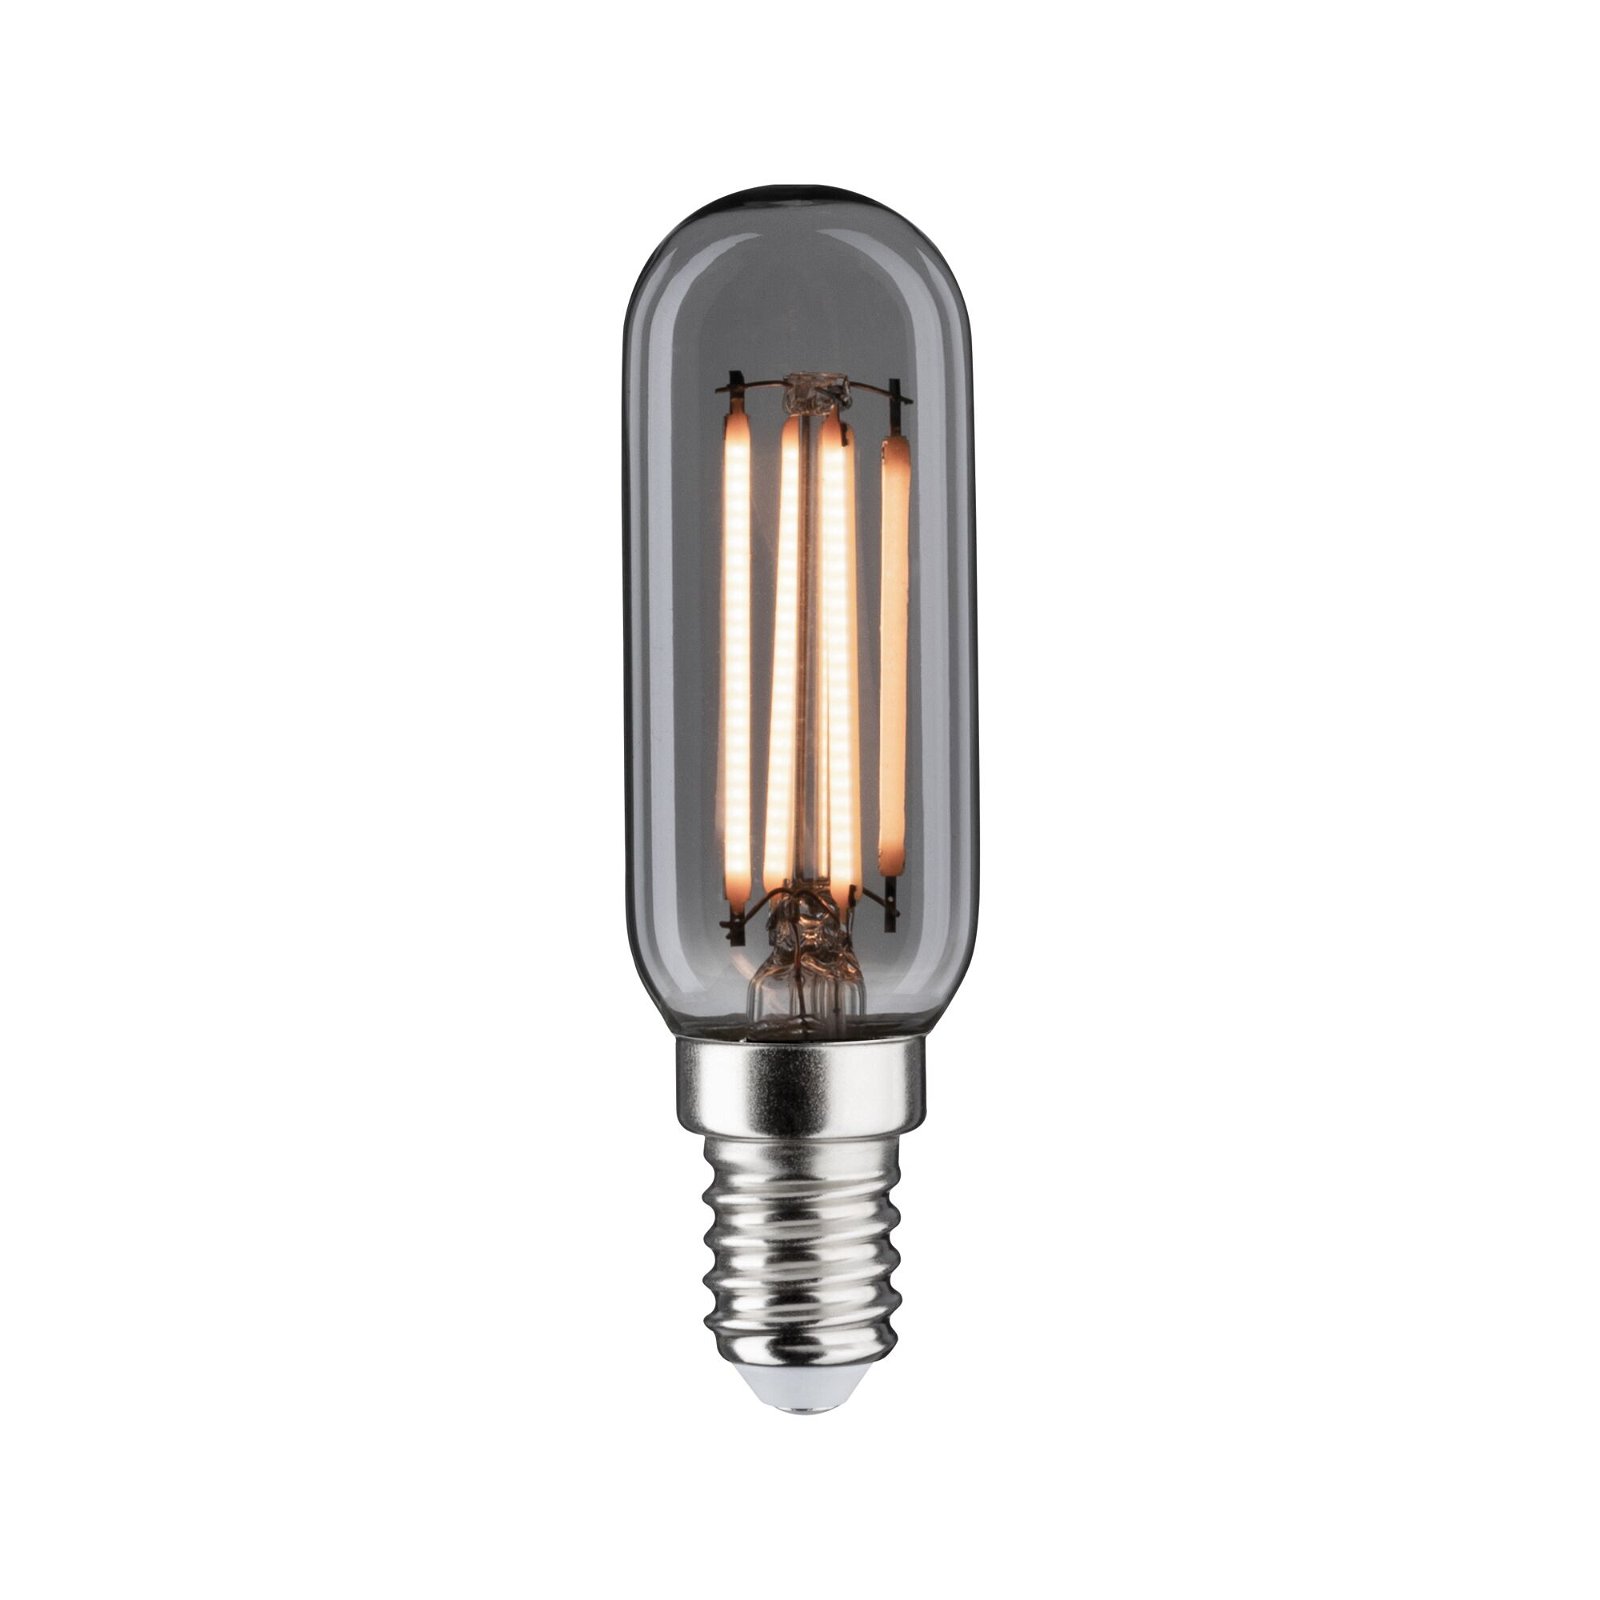 1879 Filament 230V LED Röhre E14 Dim 130lm 4W 1800K dimmbar Rauchglas